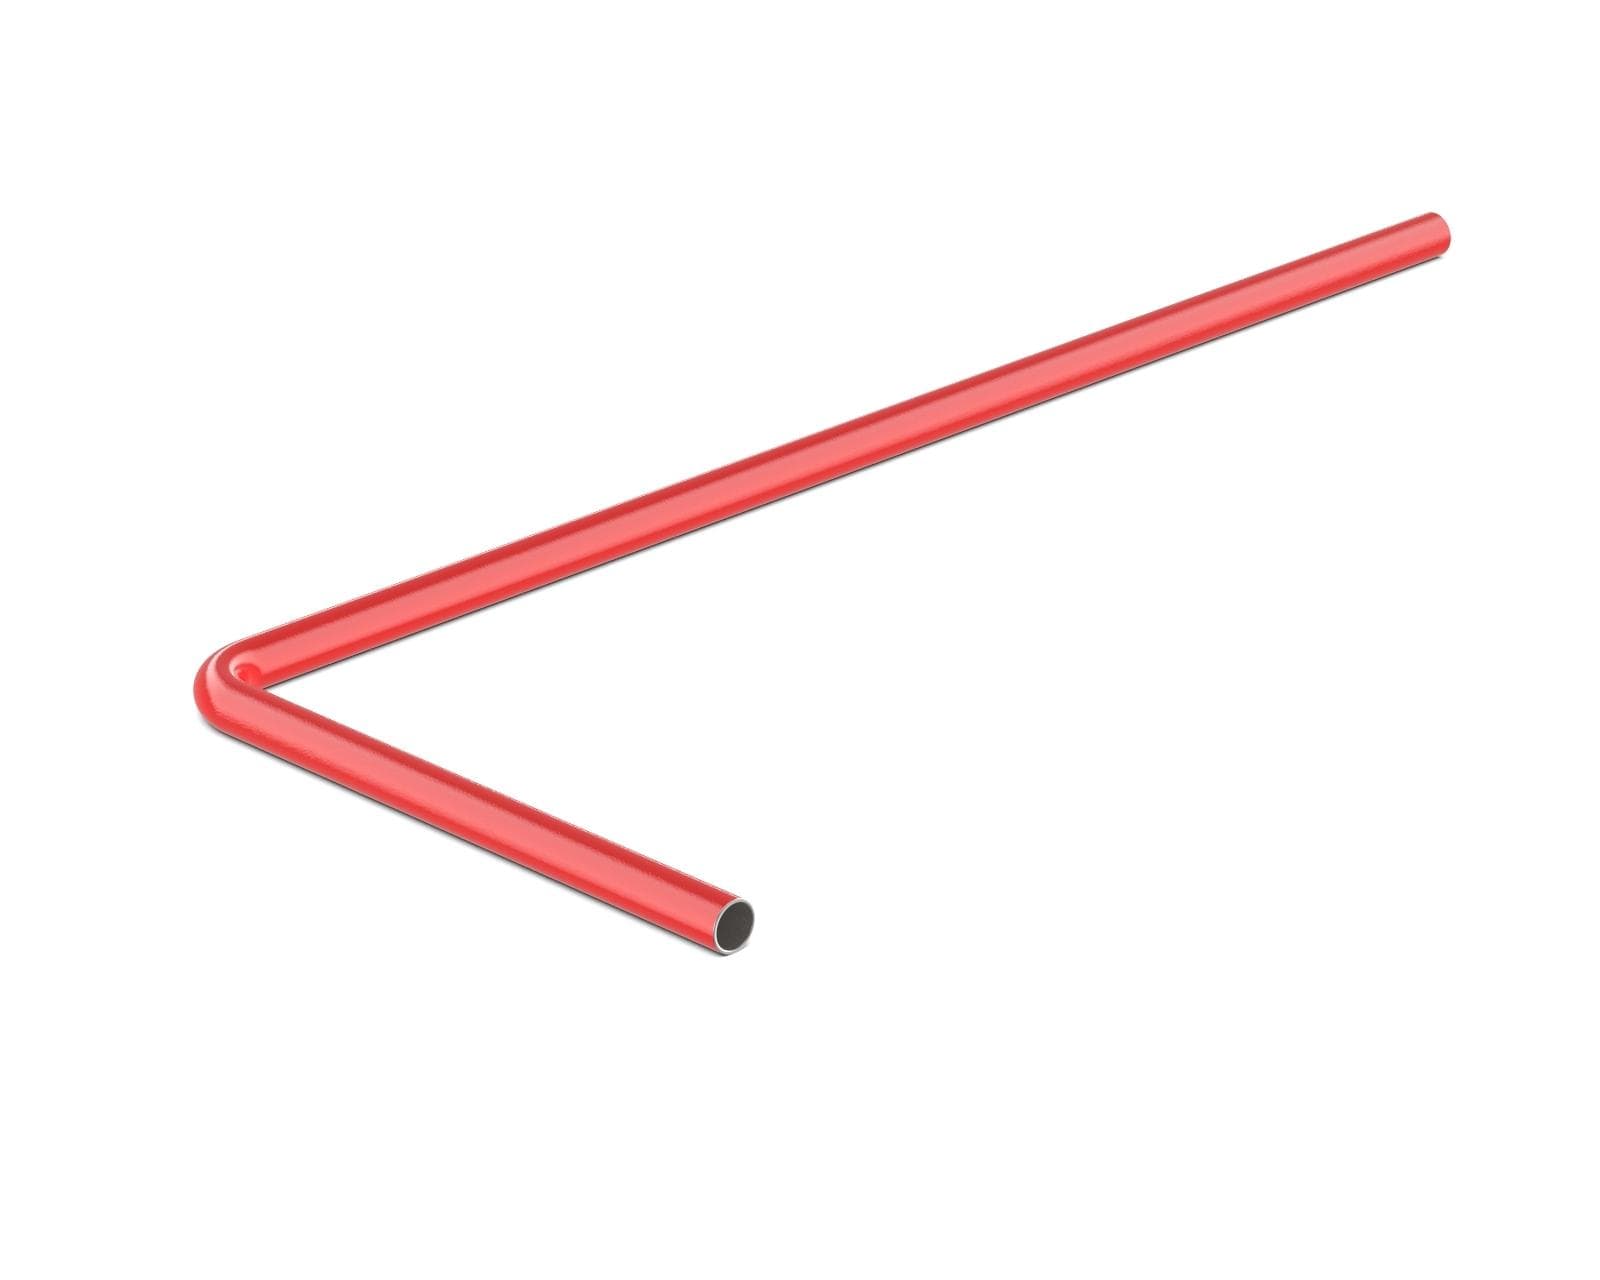 PrimoChill SX Pre-Bent 12mm ID x 14mm OD Rigid Copper Tube - Razor Red